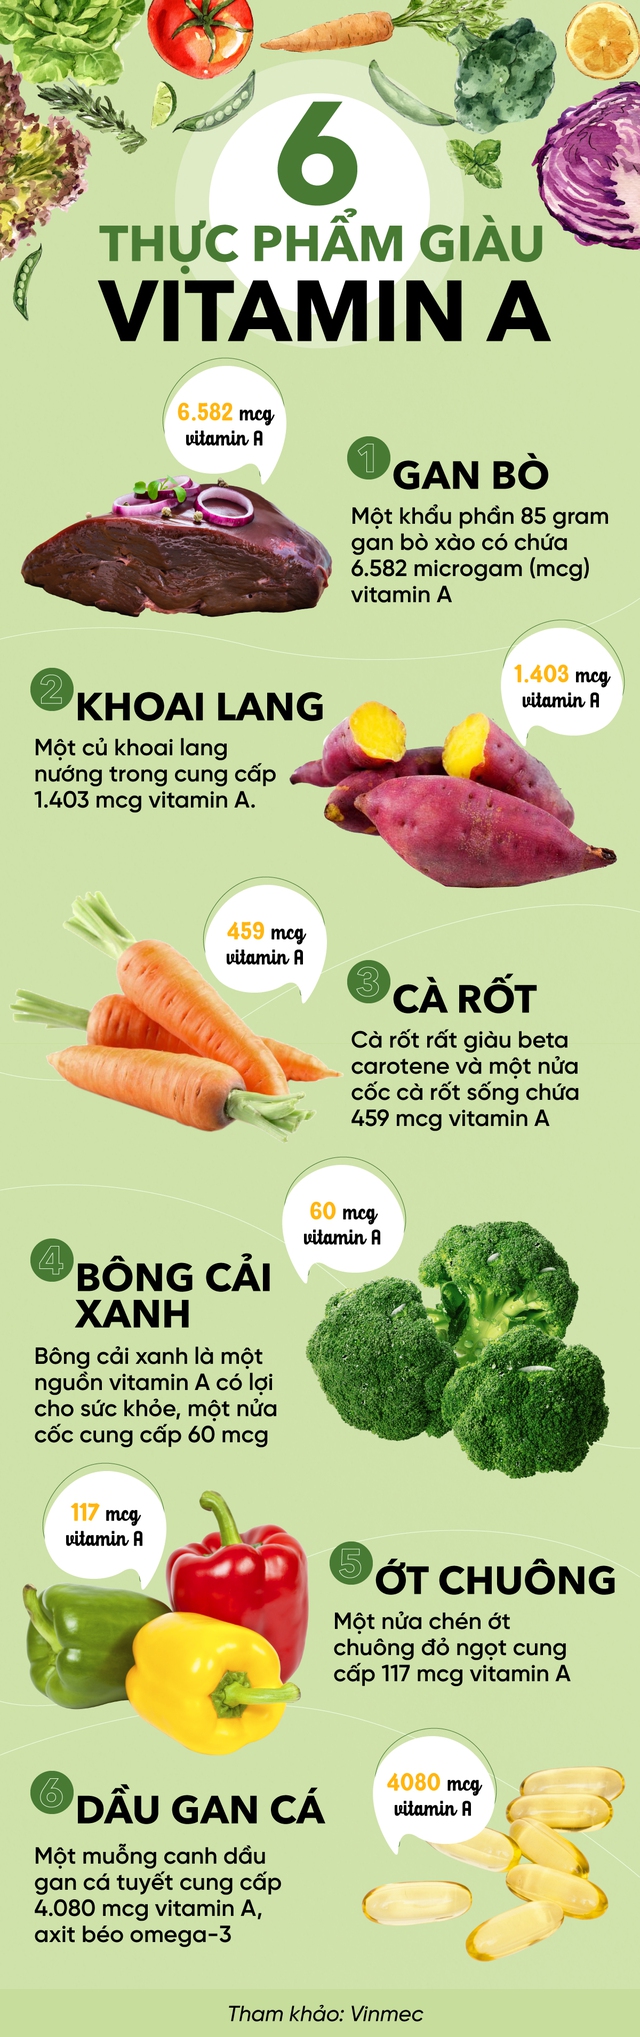 6 món “siêu thực phẩm” giàu vitamin A bậc nhất: Cà rốt chỉ xếp thứ 4, quán quân không ngờ lại là món ăn nhiều người từ chối - Ảnh 1.